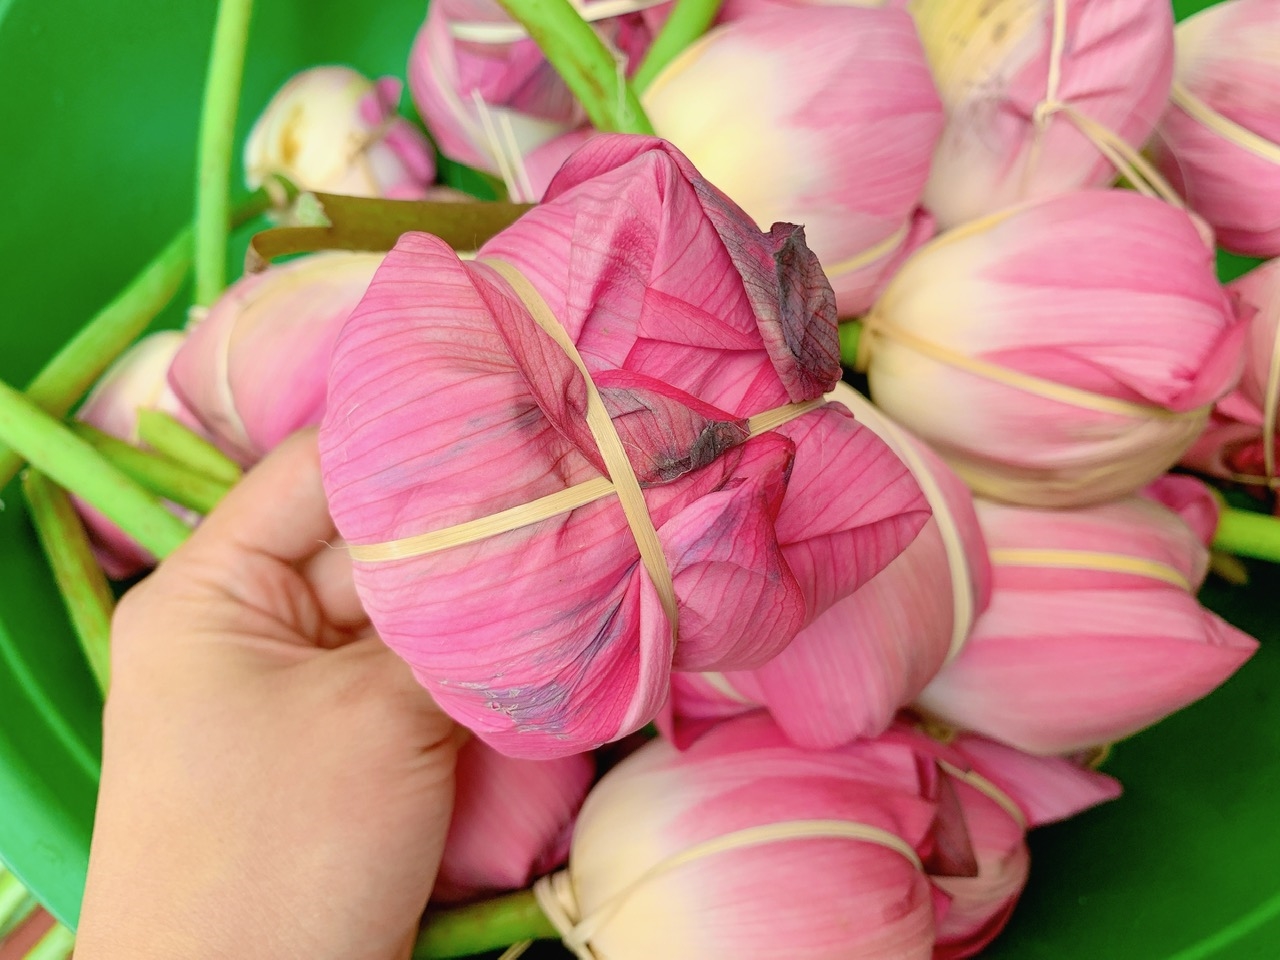 Sau khi đưa trà khô vào bên trong những búp sen, người thợ khéo léo dùng lạt buộc lại ở cuống hoa, để từng búp chè đều được gói gọn trong hương sen thơm thoảng